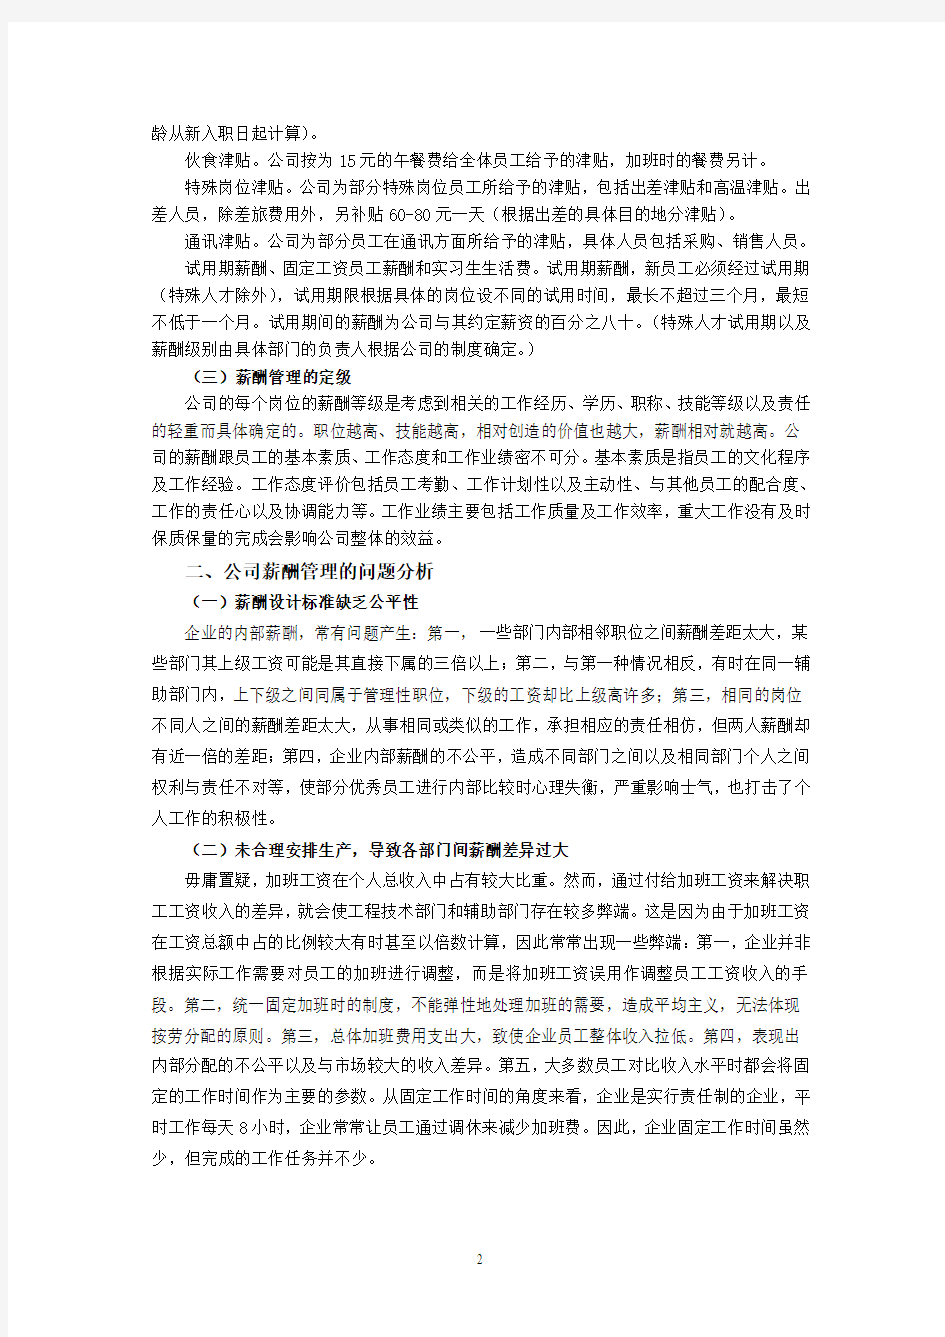 关于上海陈式食品有限公司薪酬管理情况 的分析报告